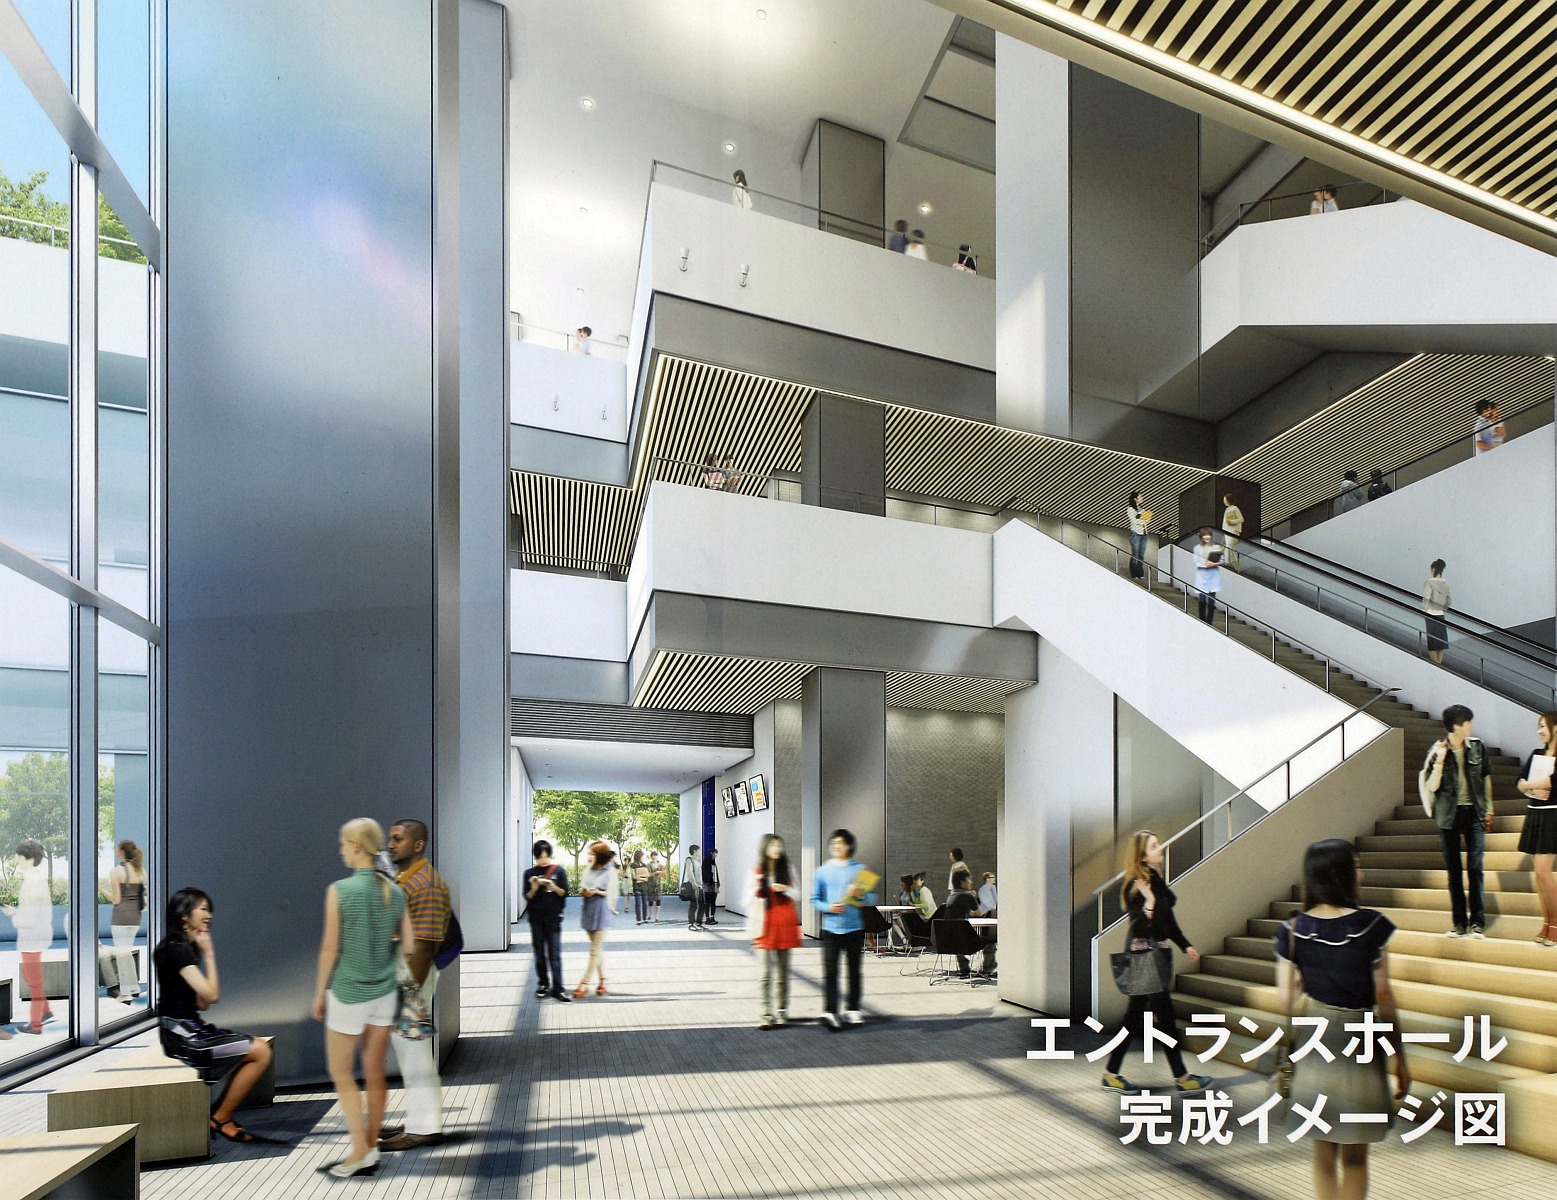 塔屋建設開始 地上22階 高さ約100m 神奈川大学みなとみらいキャンパス の建設状況 2 8 超高層マンション 超高層ビル